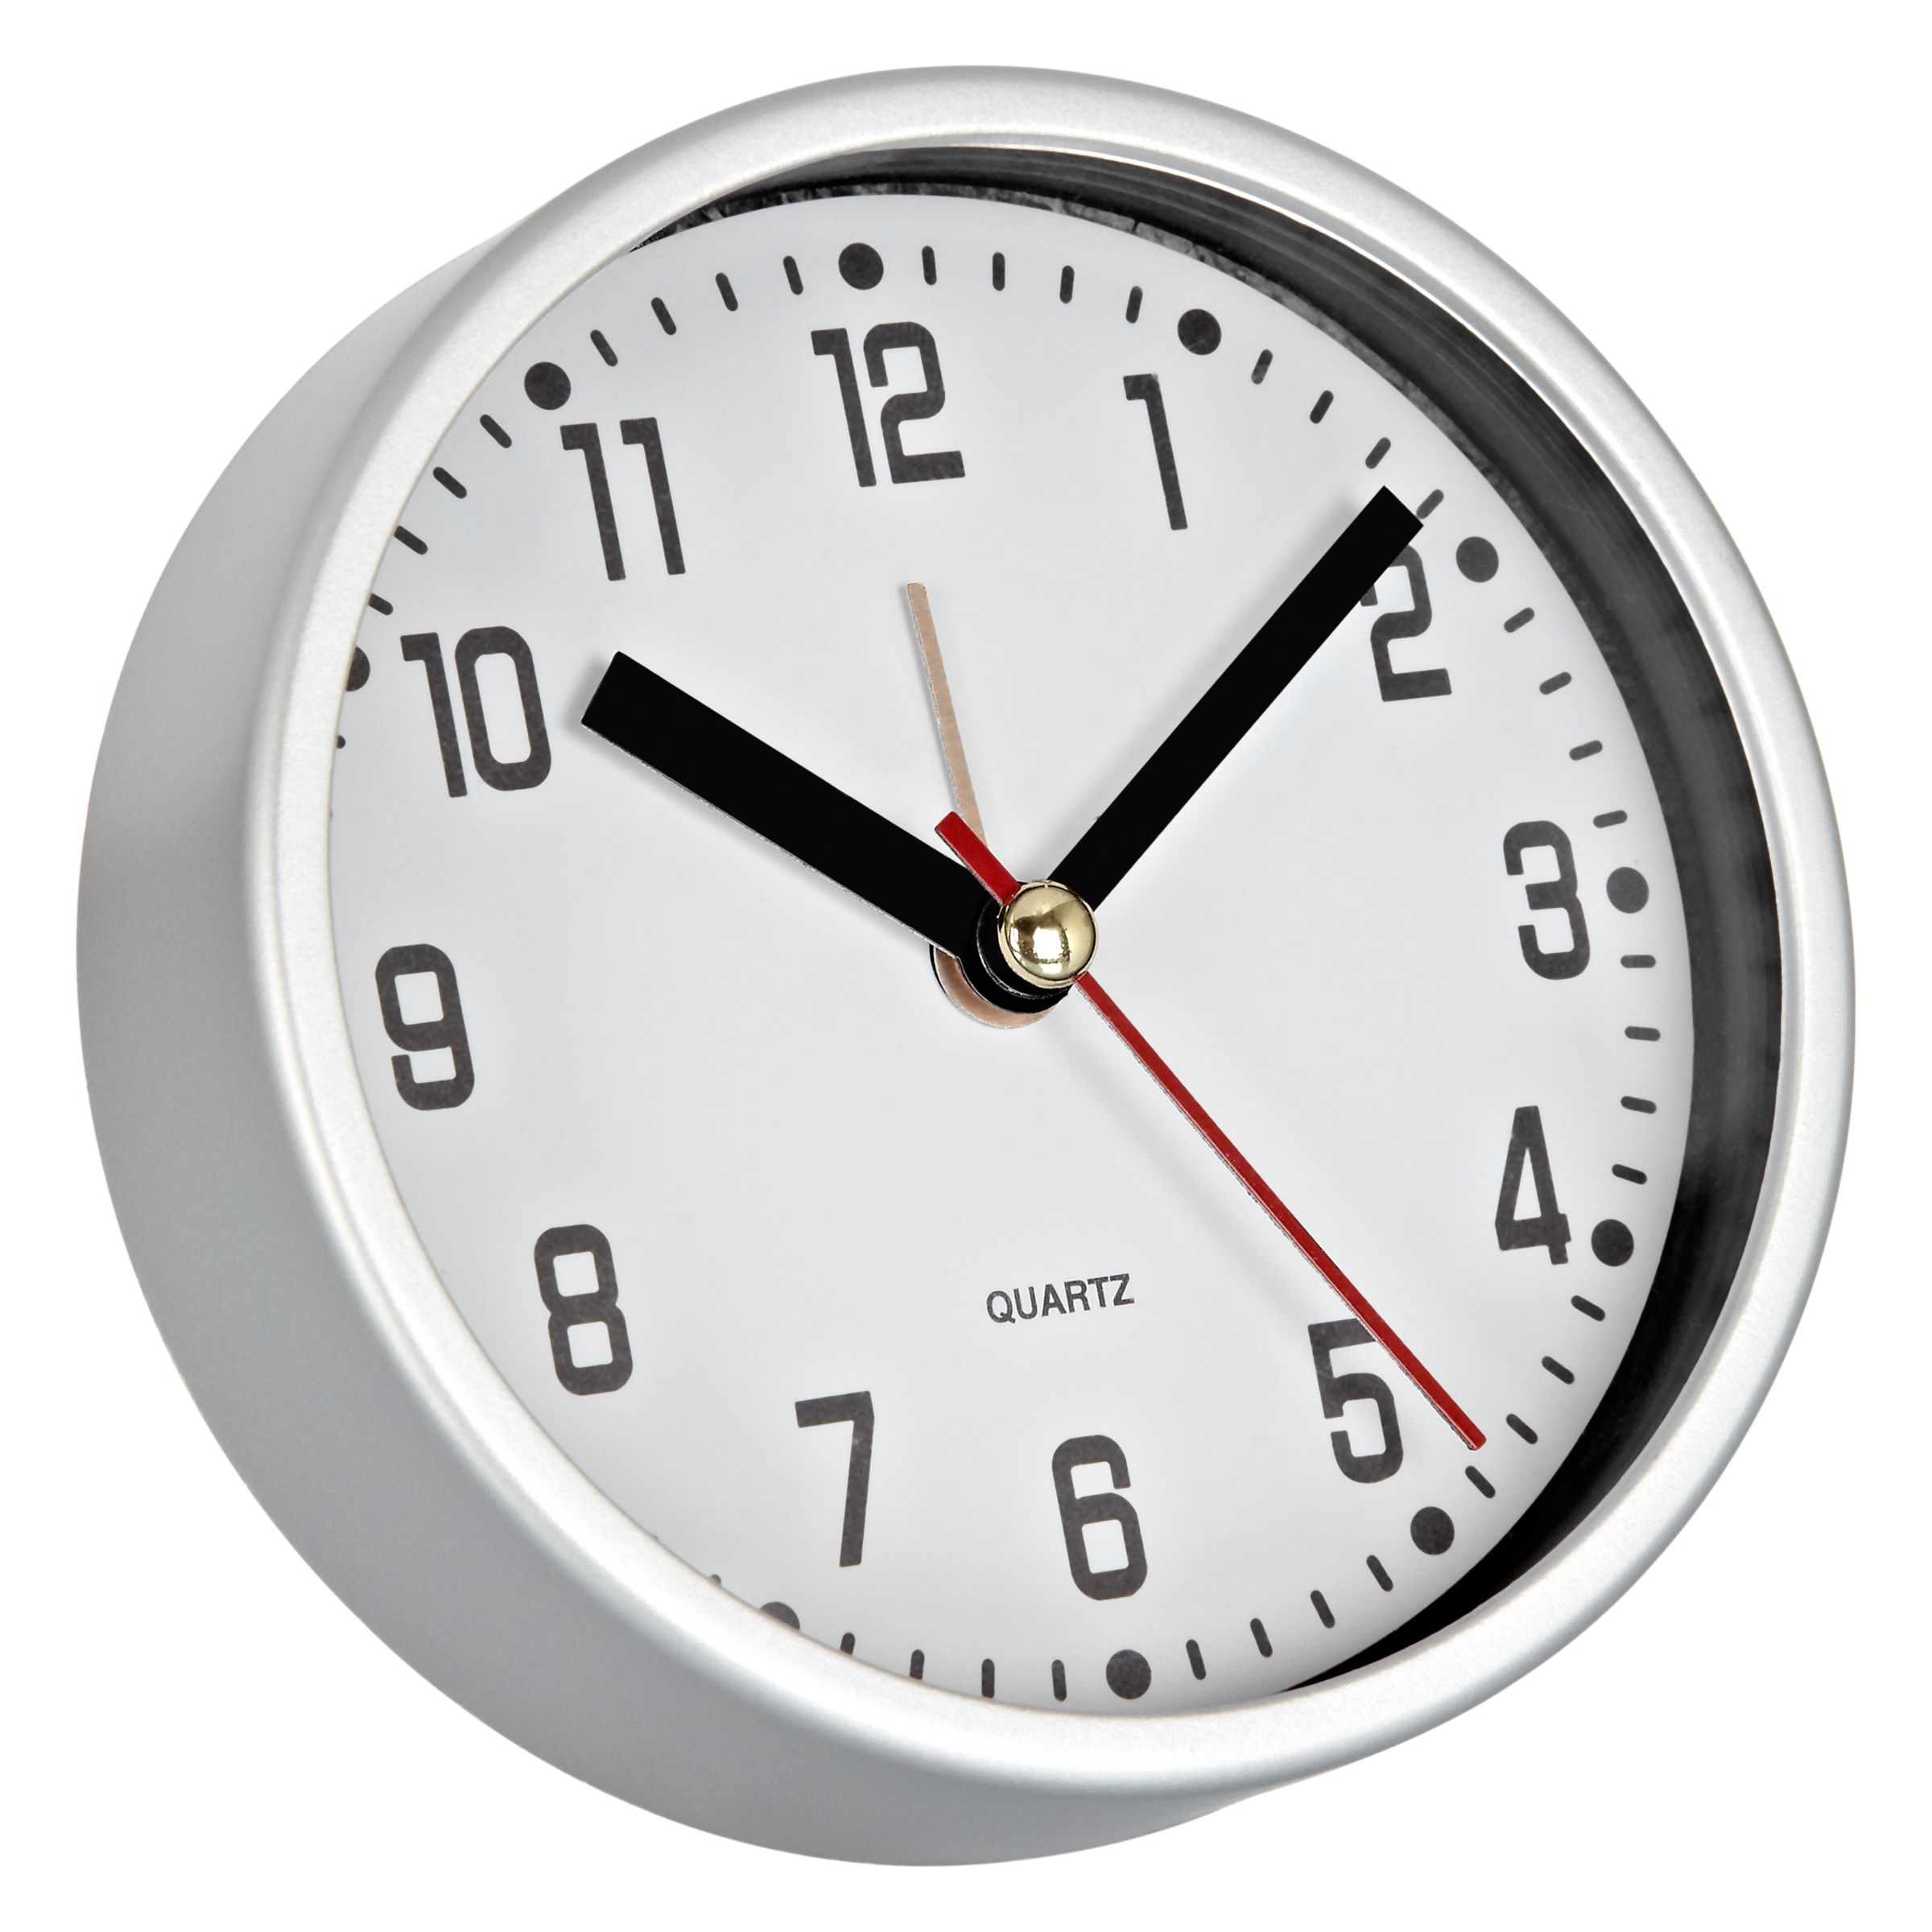 John Lewis Super Value Alarm Clock 154737